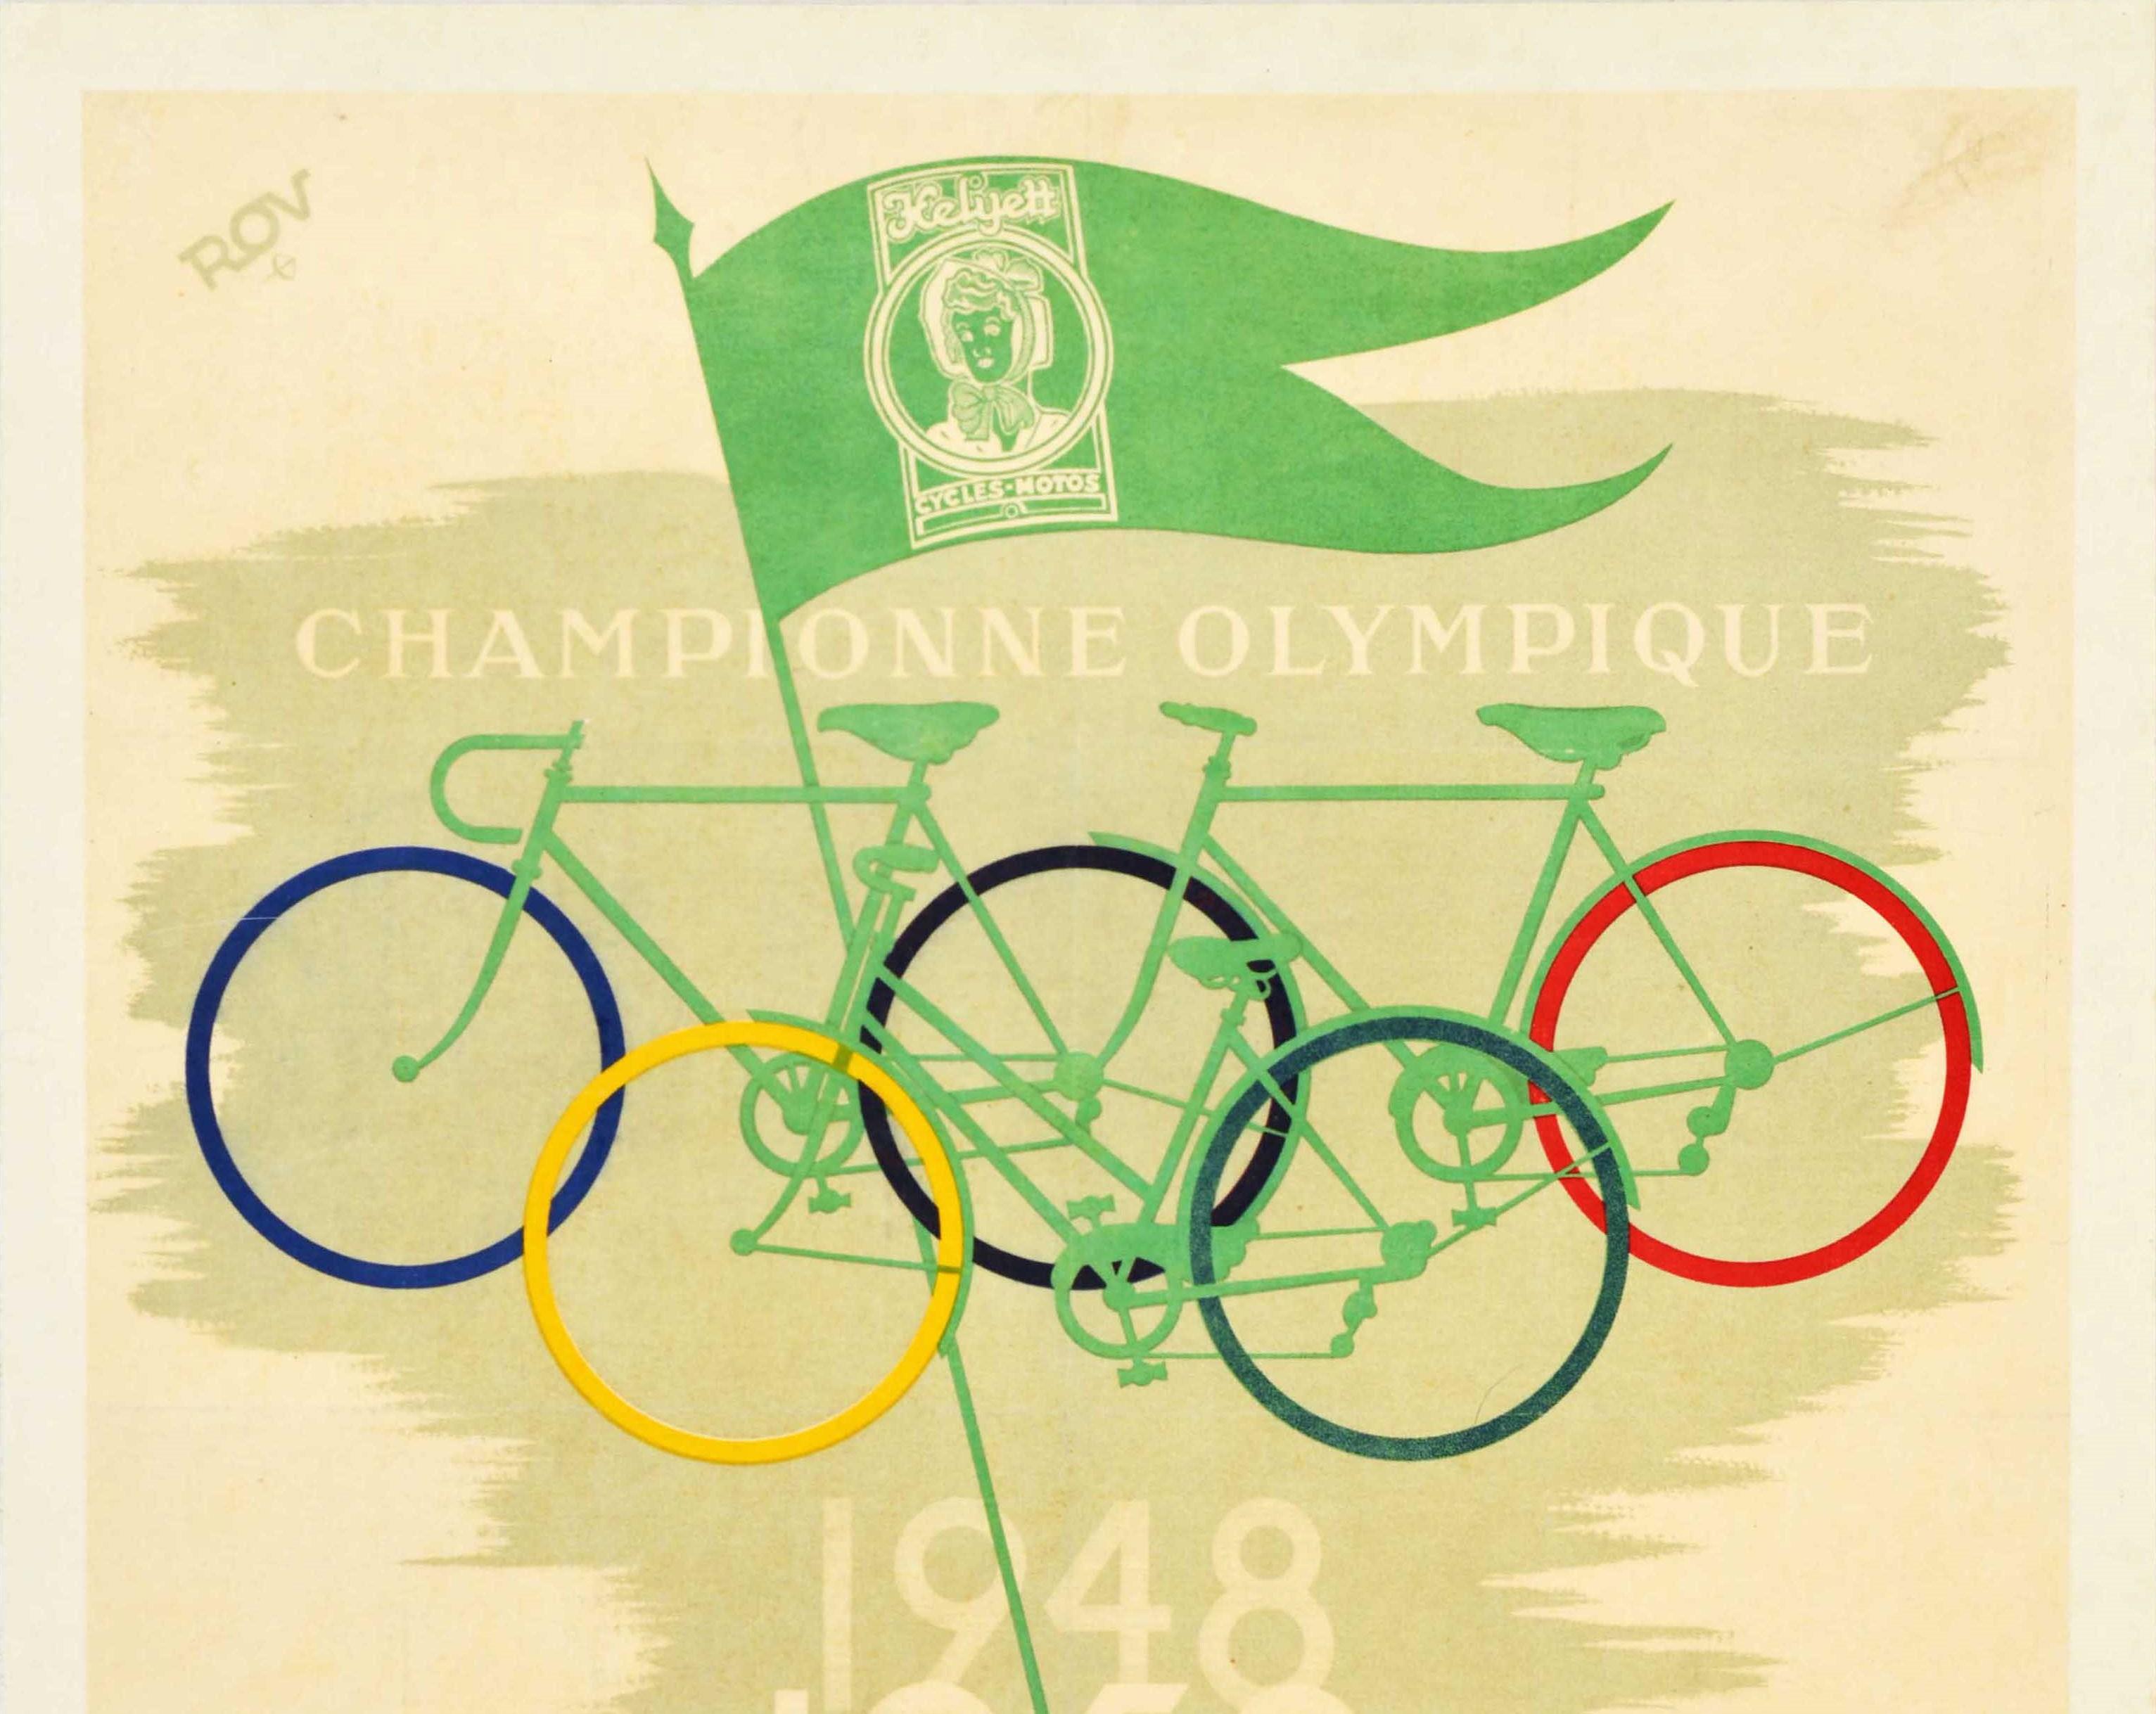 Original Vintage-Werbeplakat für Helyett-Fahrräder mit einem cleveren Design, das drei Fahrräder zeigt, deren Räder sich überlappen, um fünf Farbringe des olympischen Logos zu bilden, mit dem Helyett Cycles Motos-Logo auf einer grünen Flagge, die